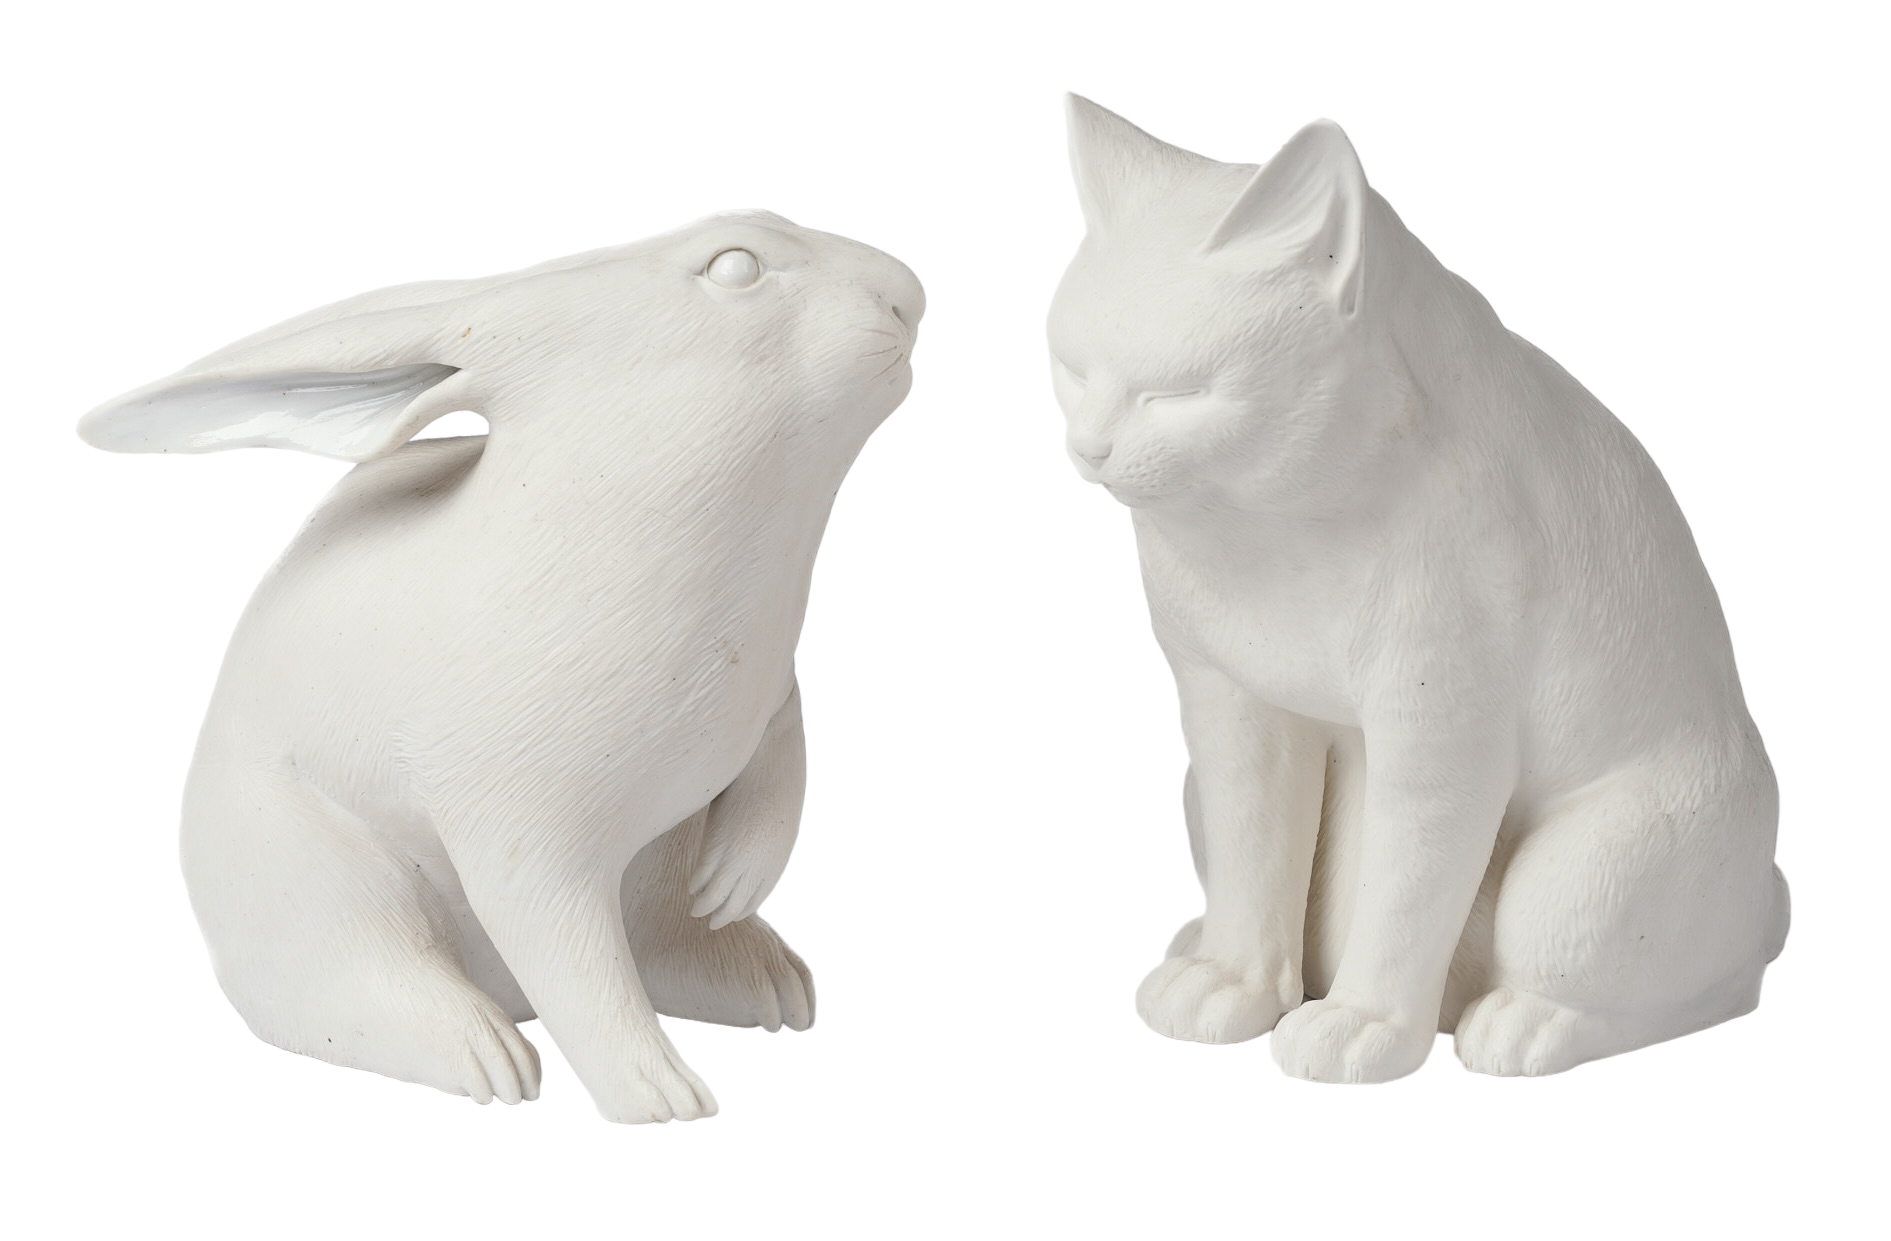 Bisque porcelain figure of a rabbit